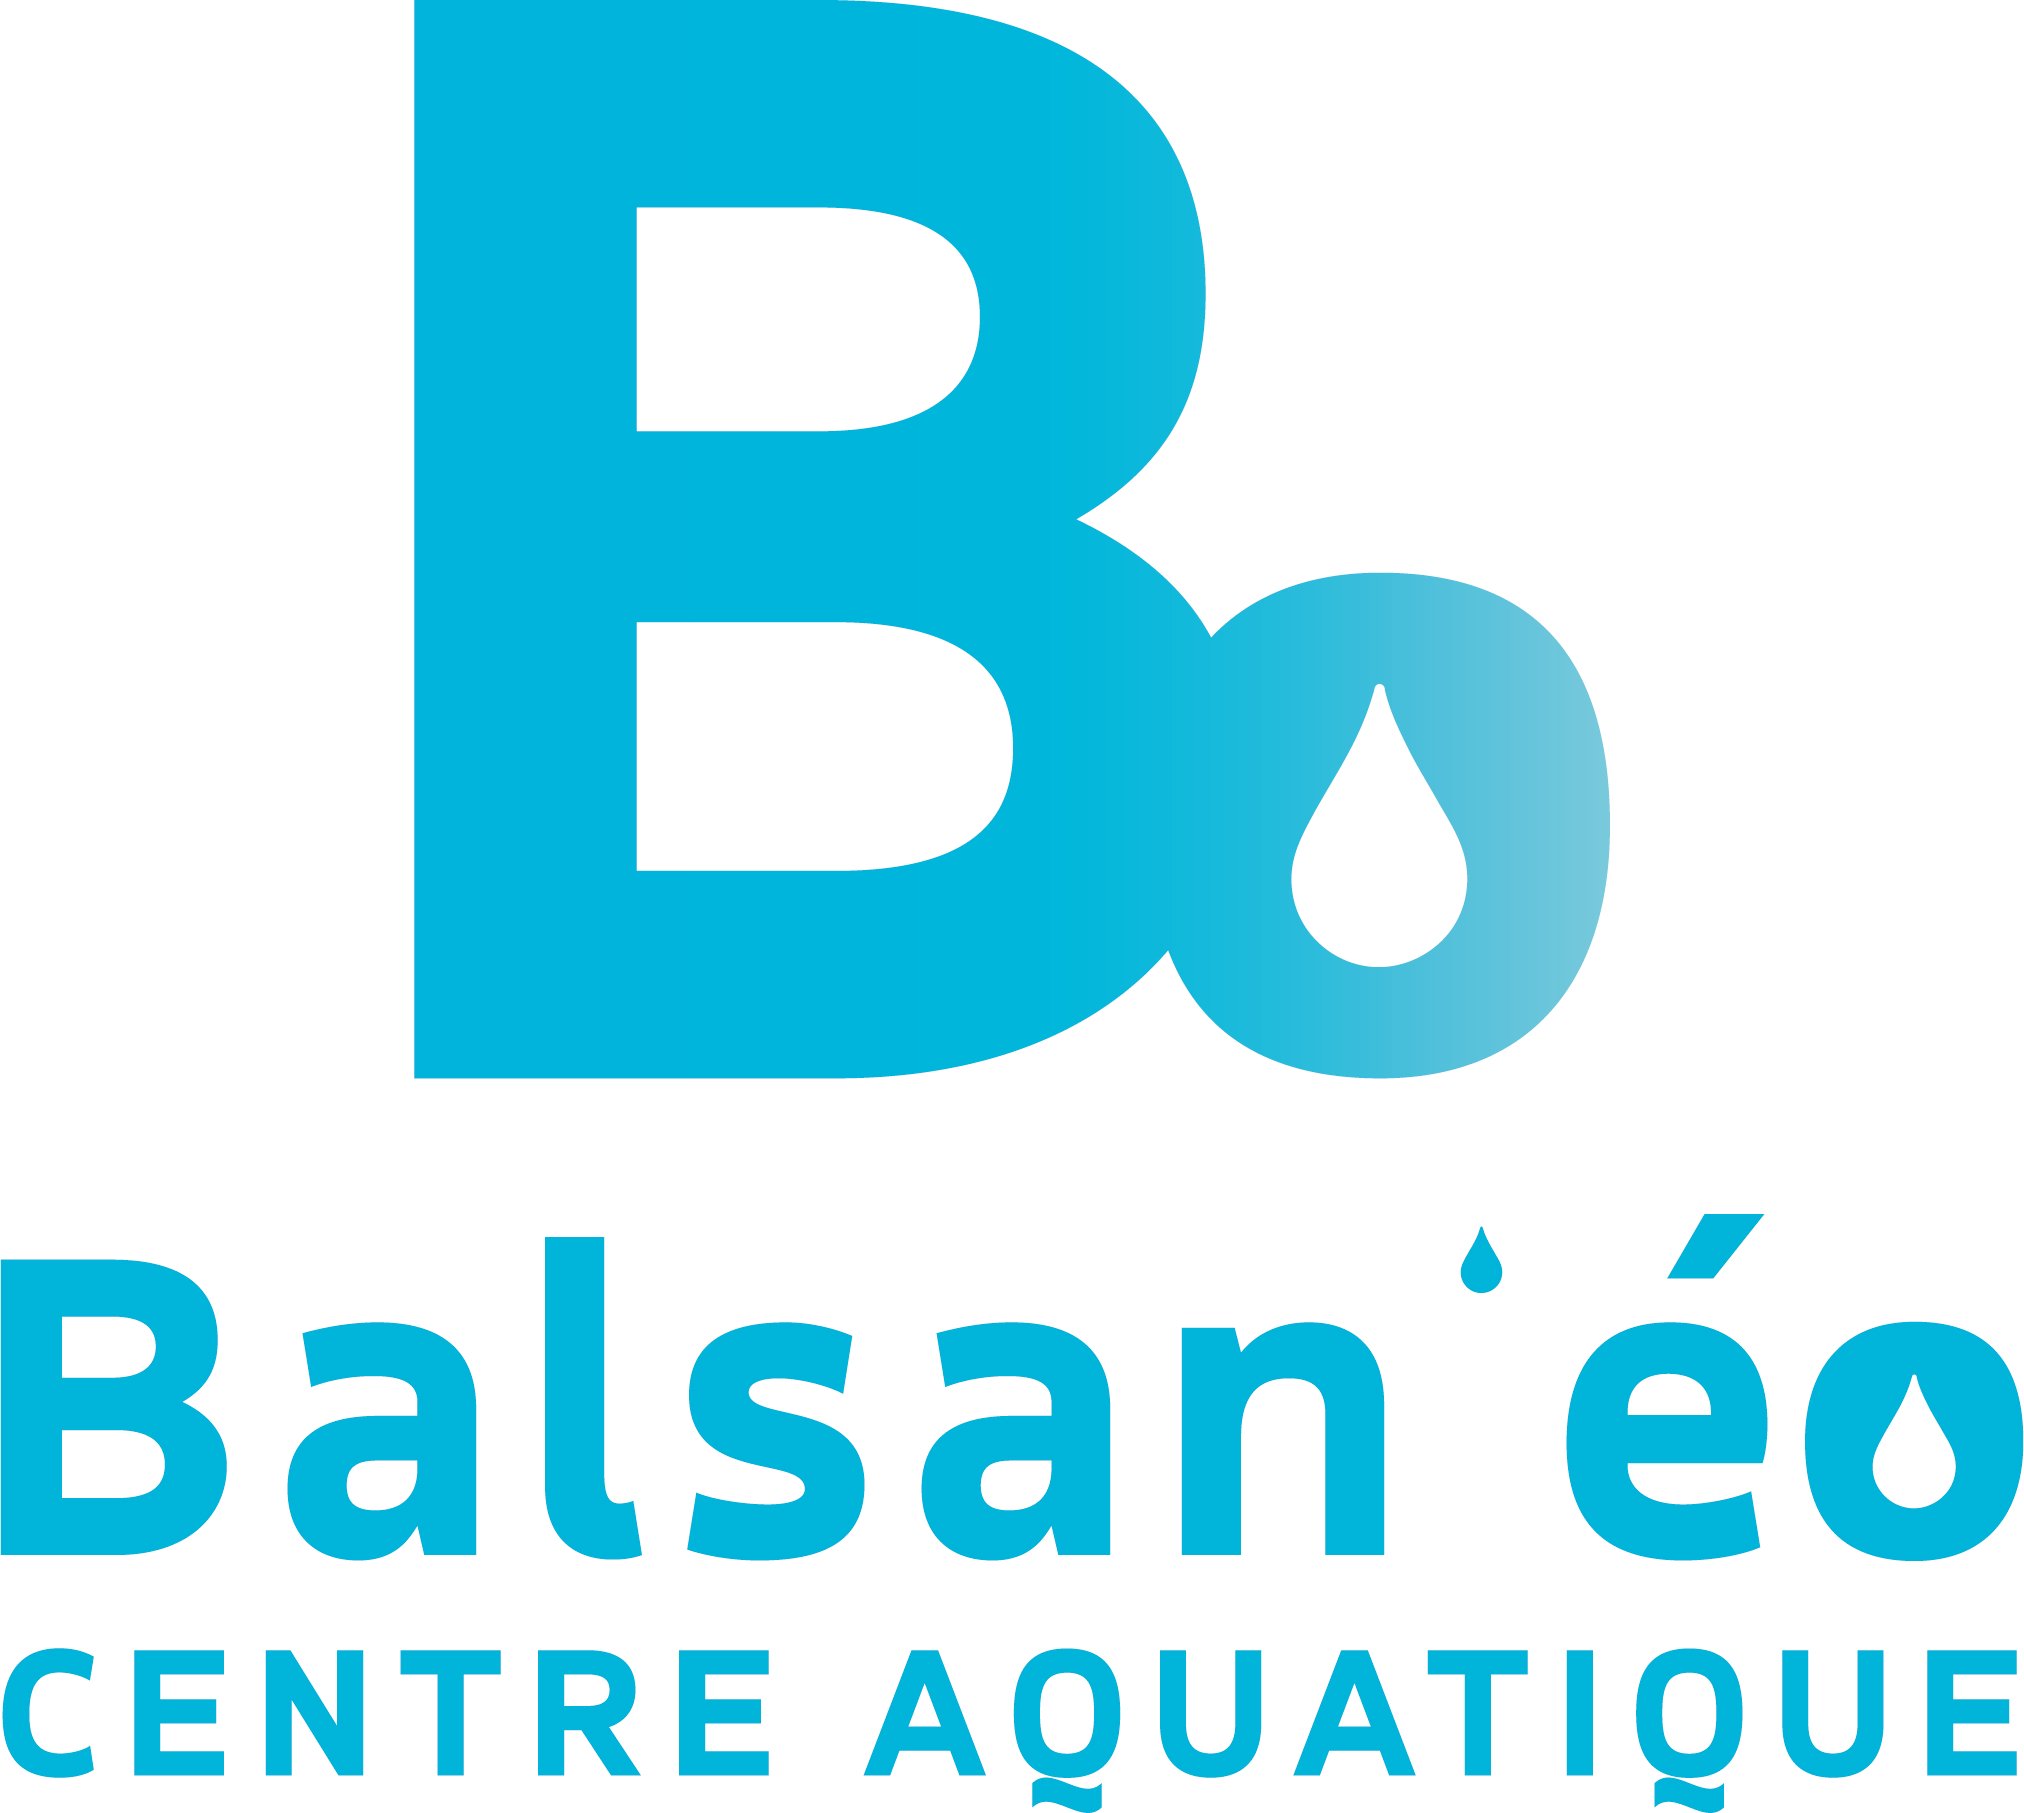 Balsaneo Chateauroux , partenaire magasin Boulanger Chateauroux . N'allez plus à la piscine sans votre bracelet connecté pour mesurer vos performances